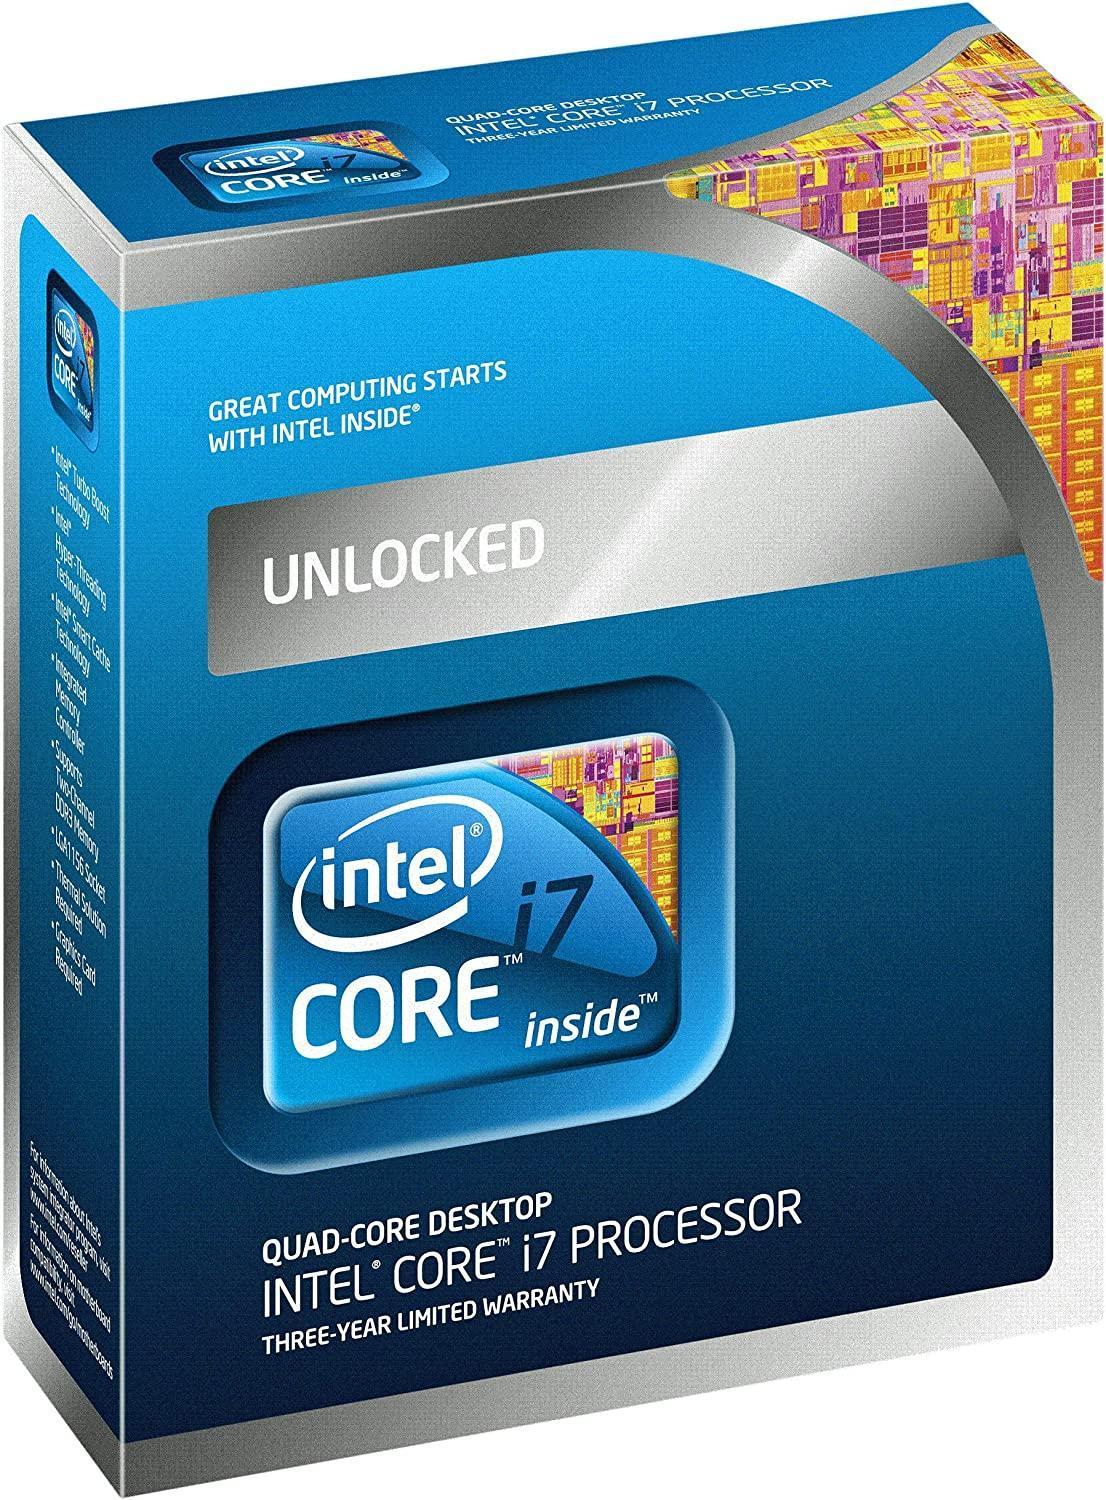 Intel Core i7-875K Processor 2.93 GHz 8 MB Cache Socket LGA1156